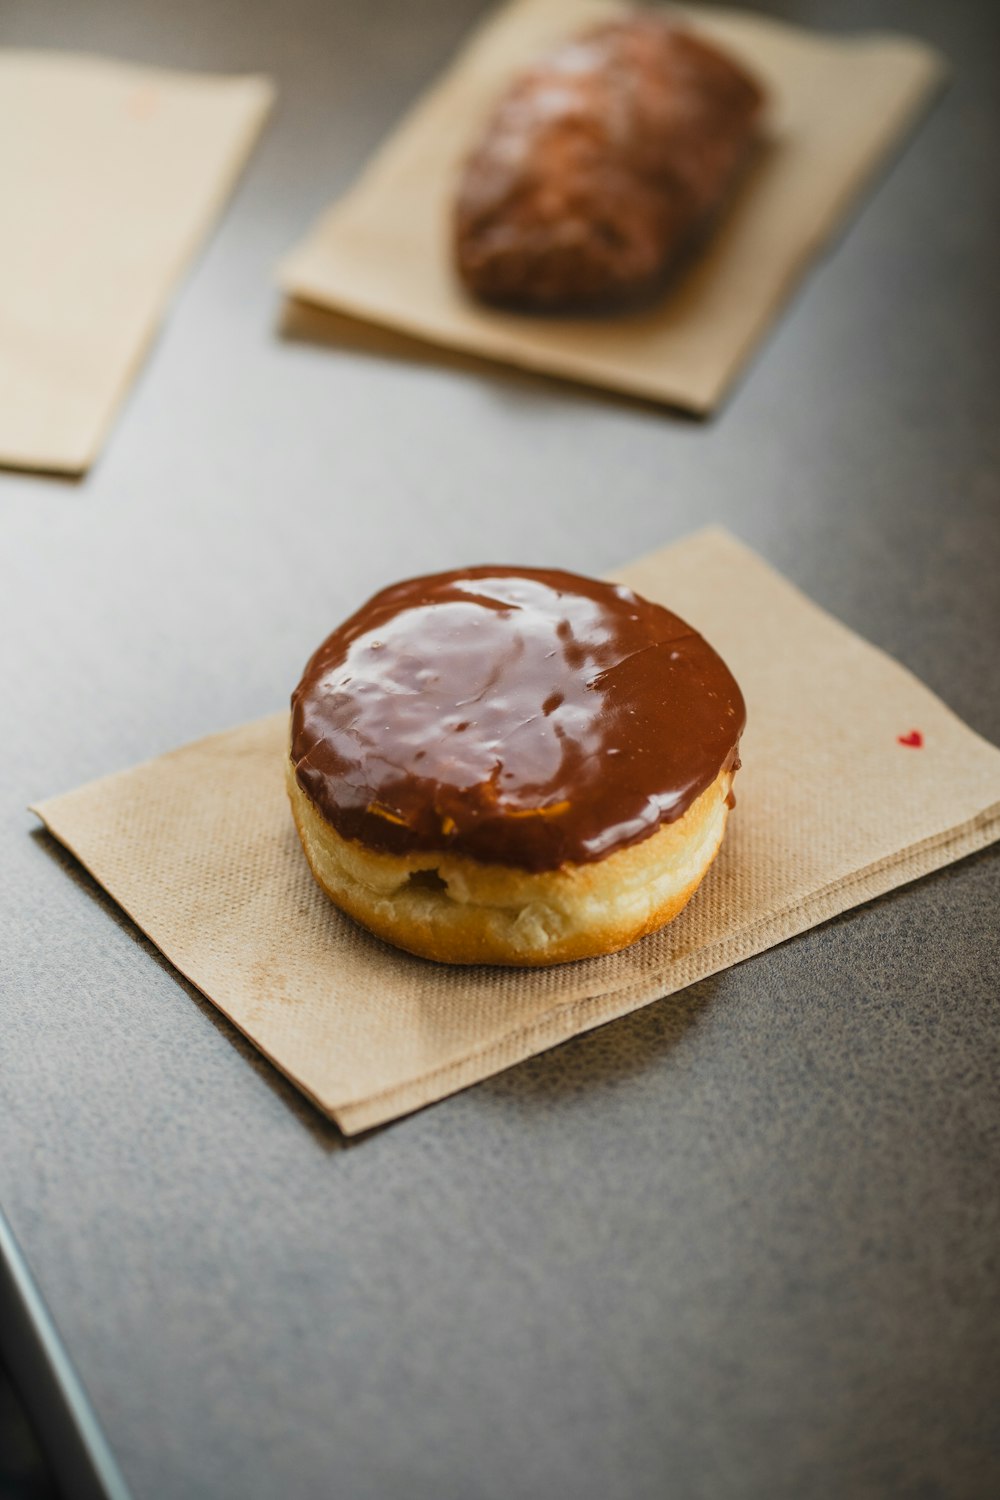 Un donut cubierto de chocolate sentado encima de una servilleta